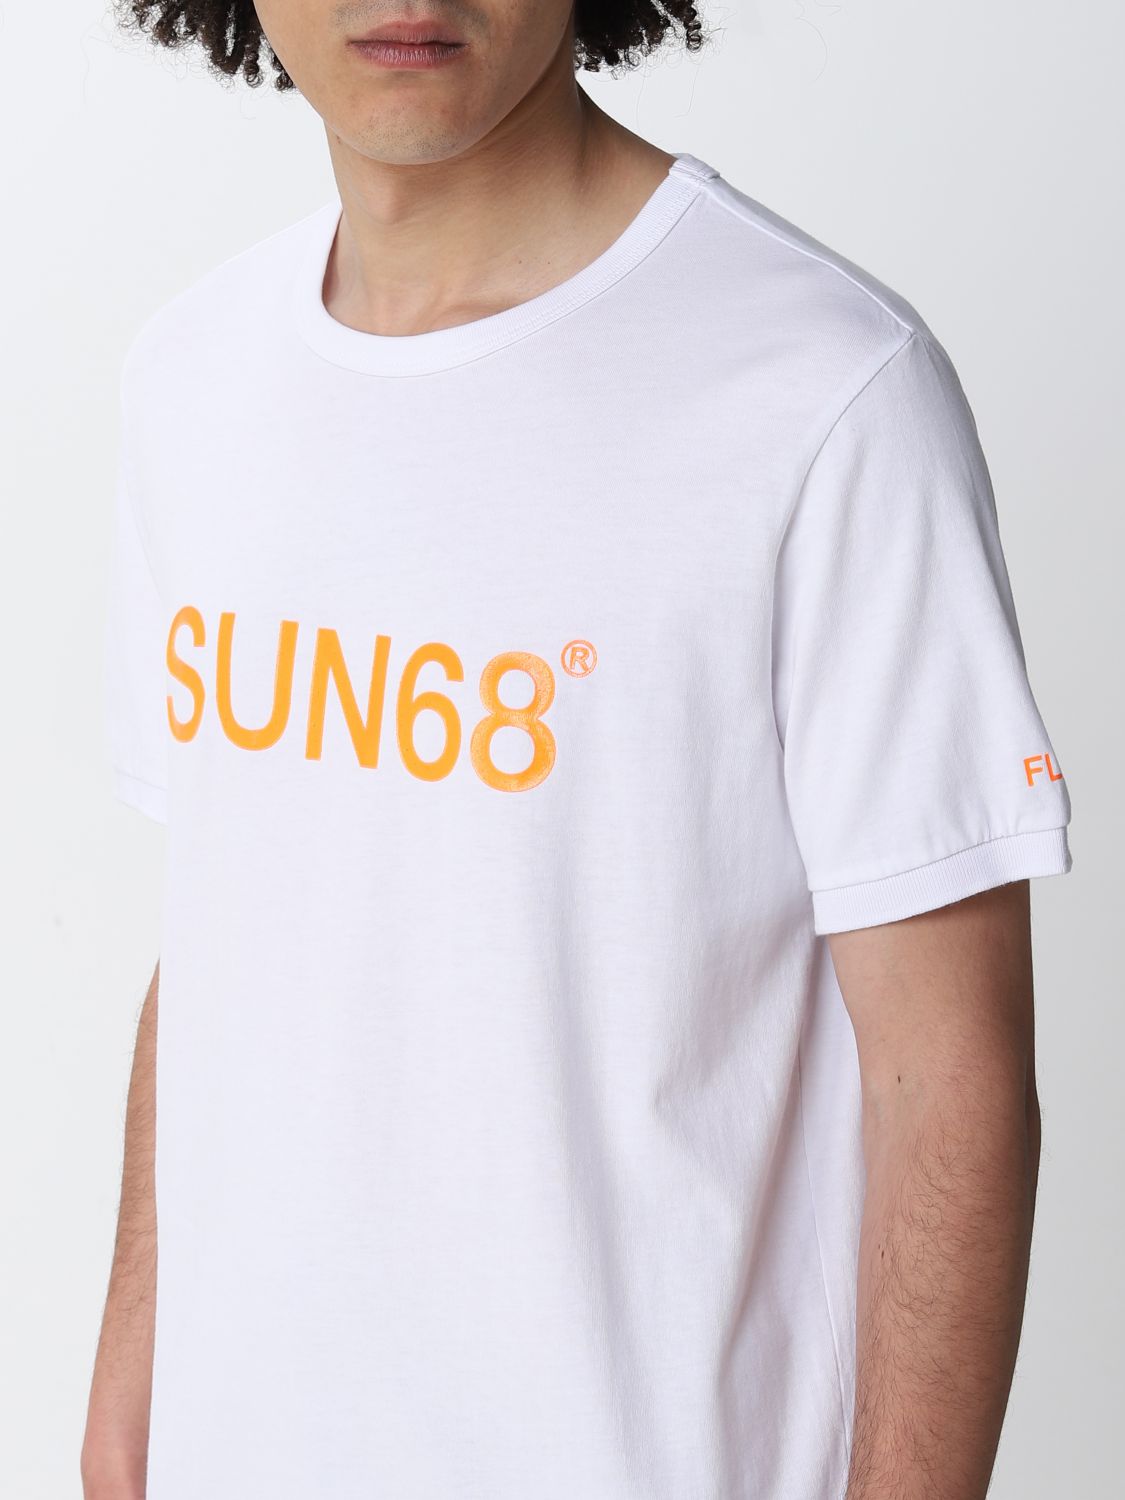 T恤 Sun 68: Sun 68t恤男士 白色 3